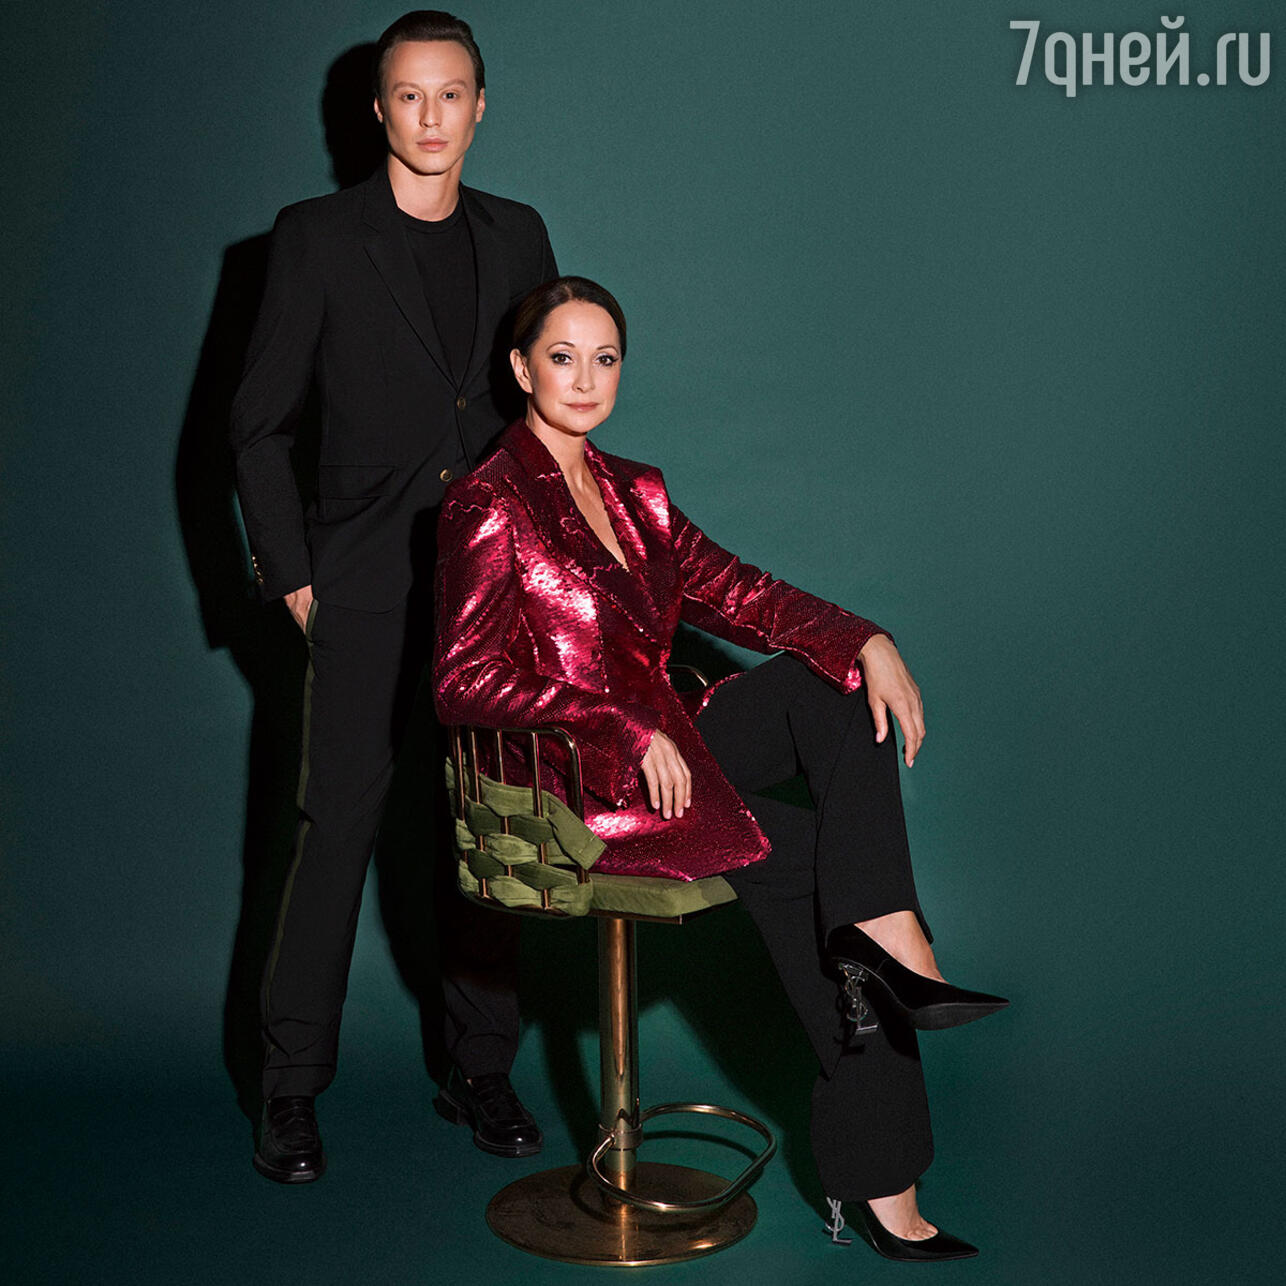 Владимир Славский и Ольга Кабо. Фото